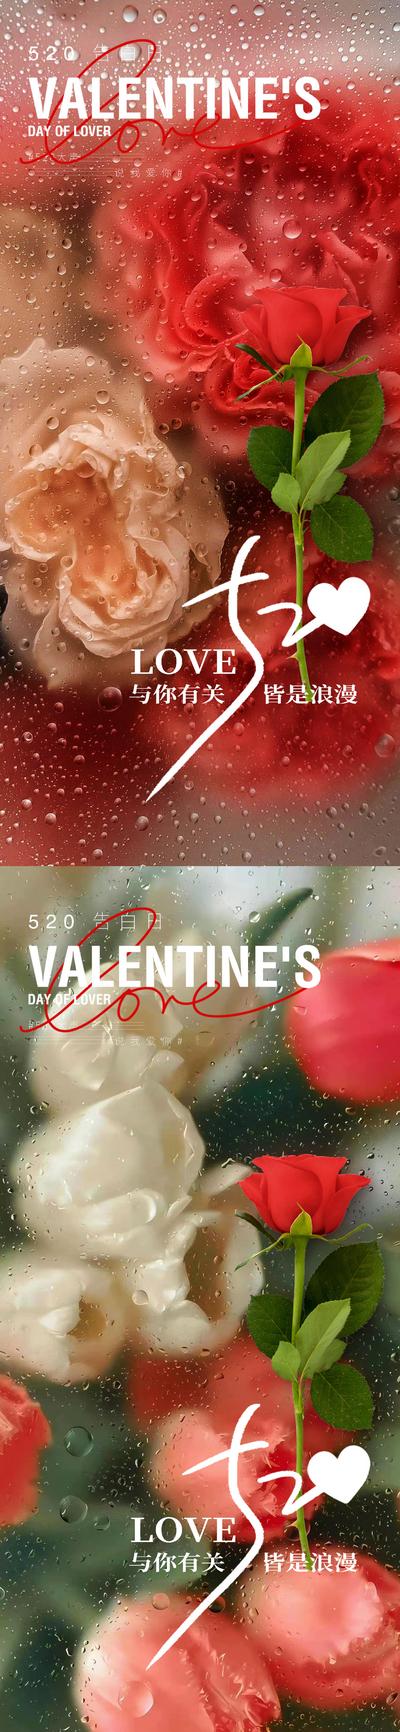 南门网 广告 海报 地产 520 医美 节日 美业 爱情 玫瑰 康乃馨 爱人 鲜花 花 花卉 水滴 唯美